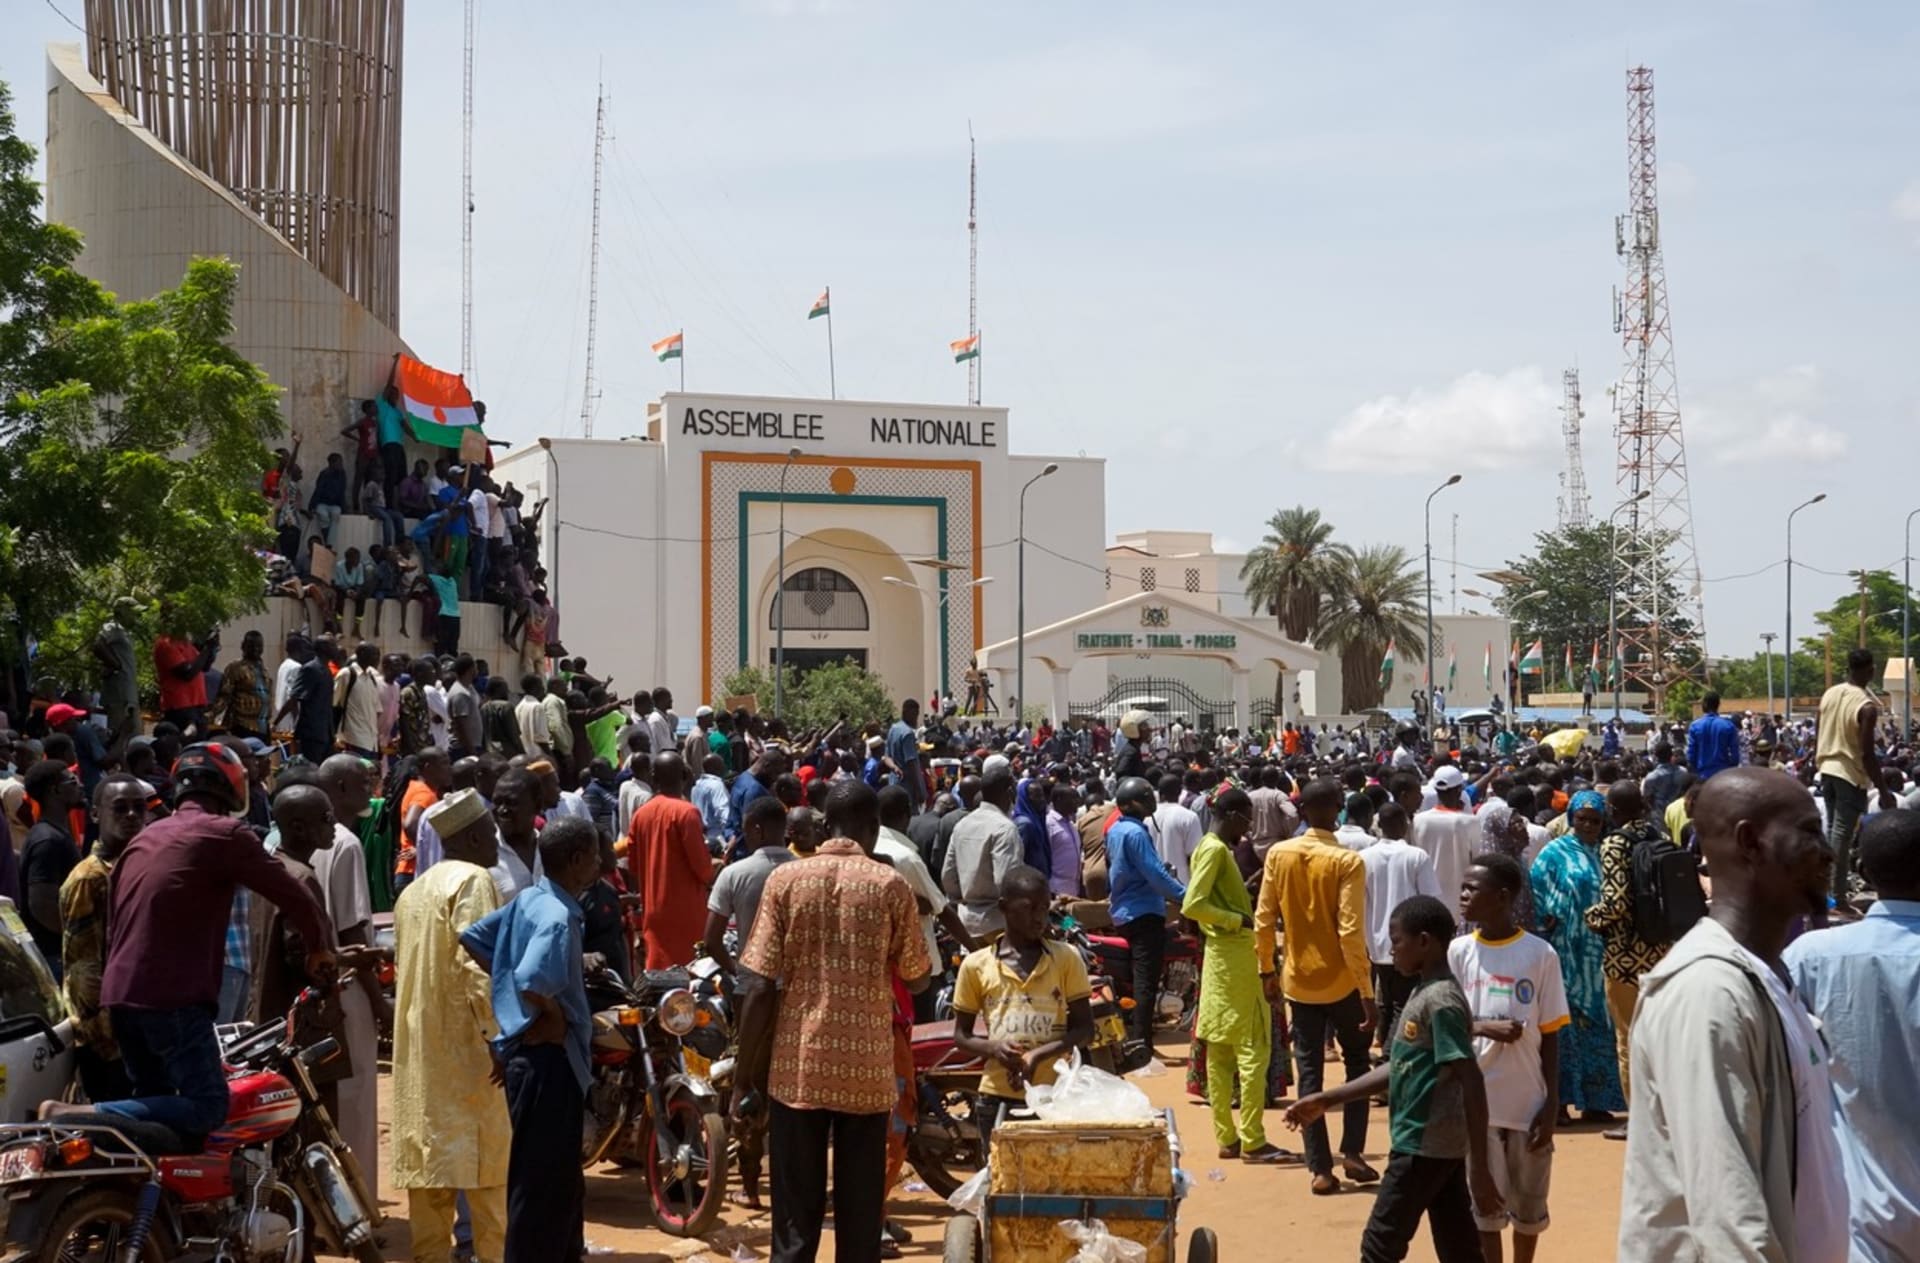 Do ulic v Nigeru vyrazily tisíce lidí, někteří z nich měli ruské vlajky.